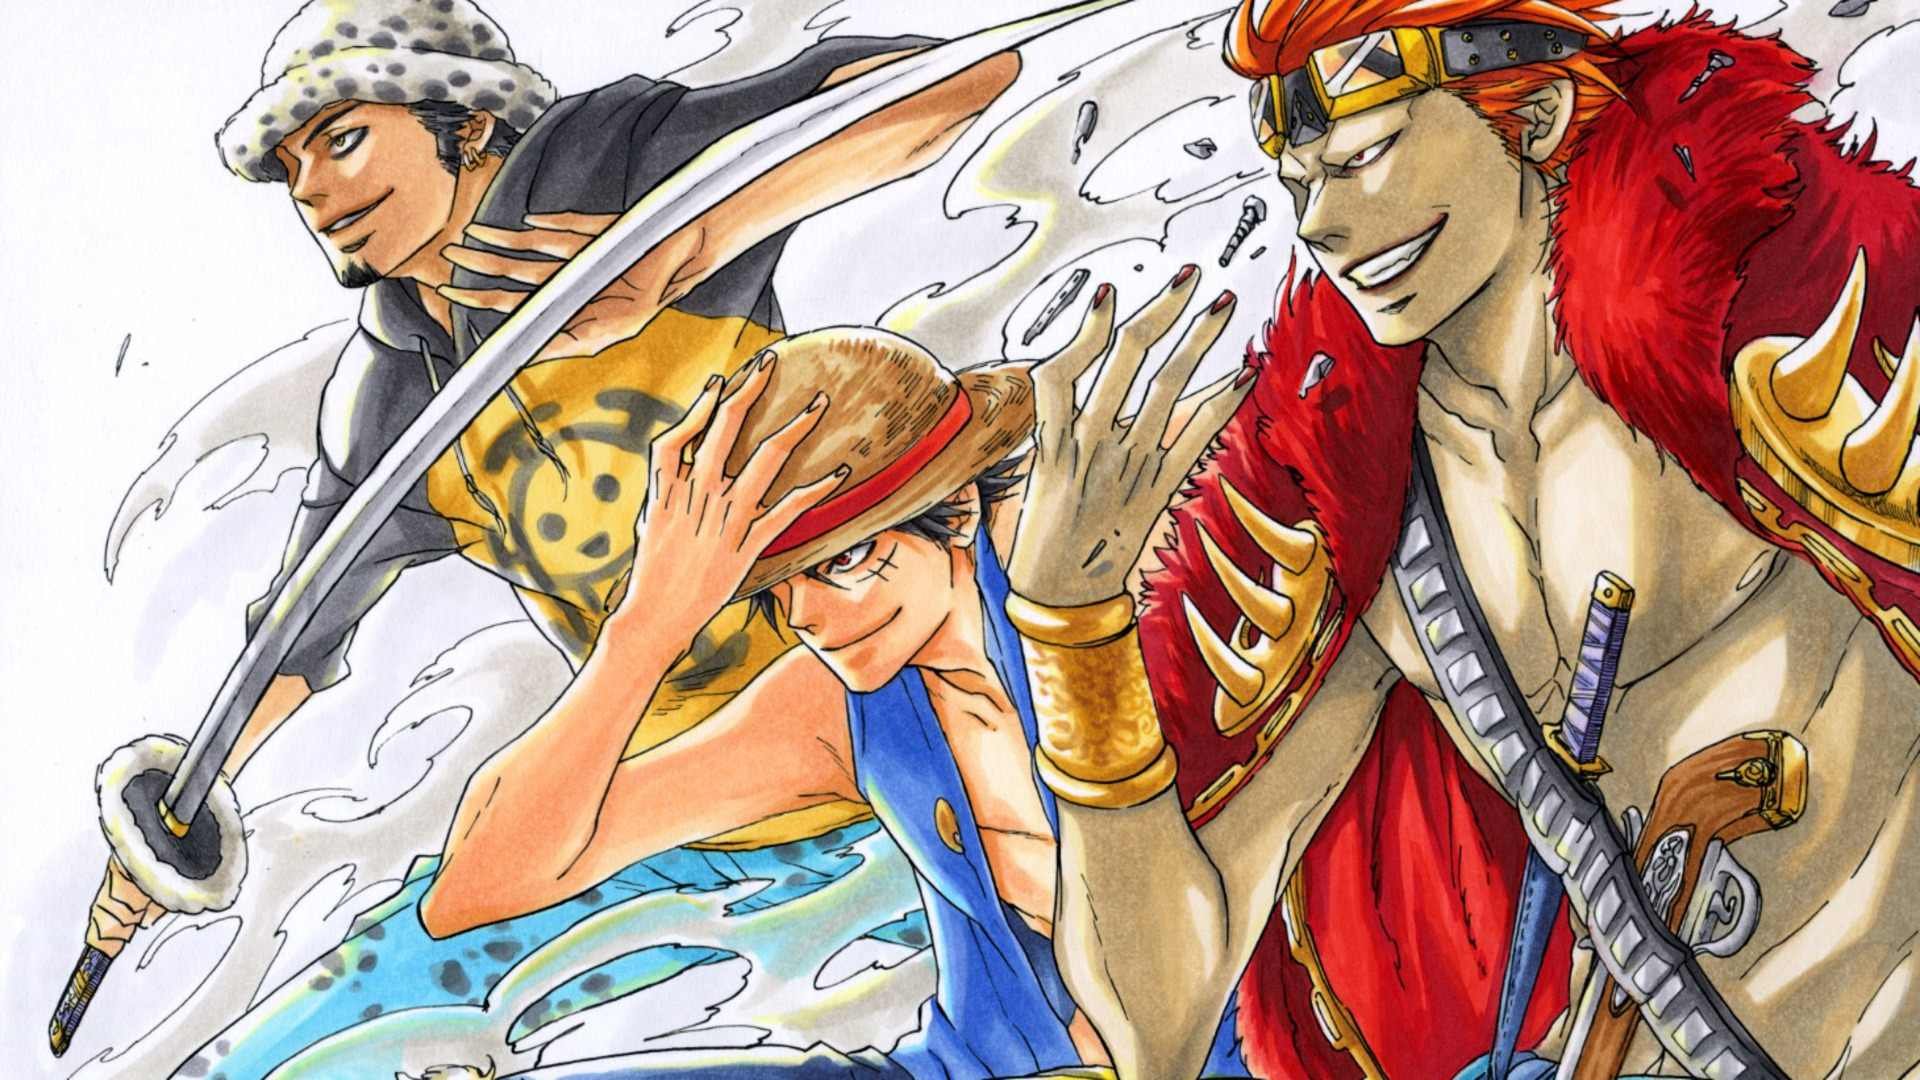 Hãy cùng đón xem hình ảnh về bộ truyện nổi tiếng One Piece và khám phá cốt truyện kỳ diệu của đội hải tặc Mũ Rơm!